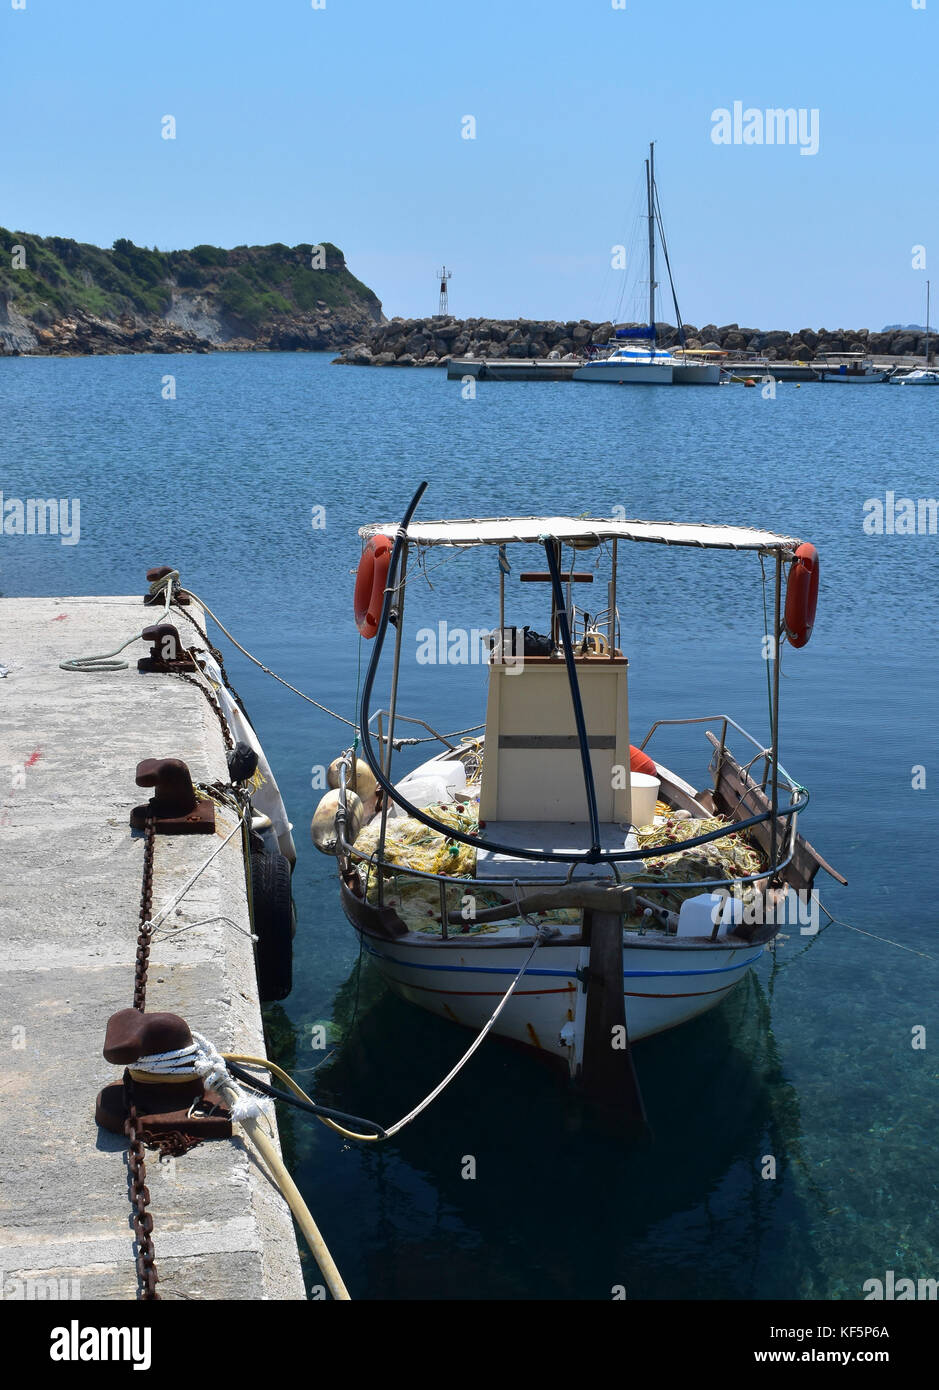 Bateau de pêche au passada Harbour sur l'île grecque de Céphalonie Banque D'Images